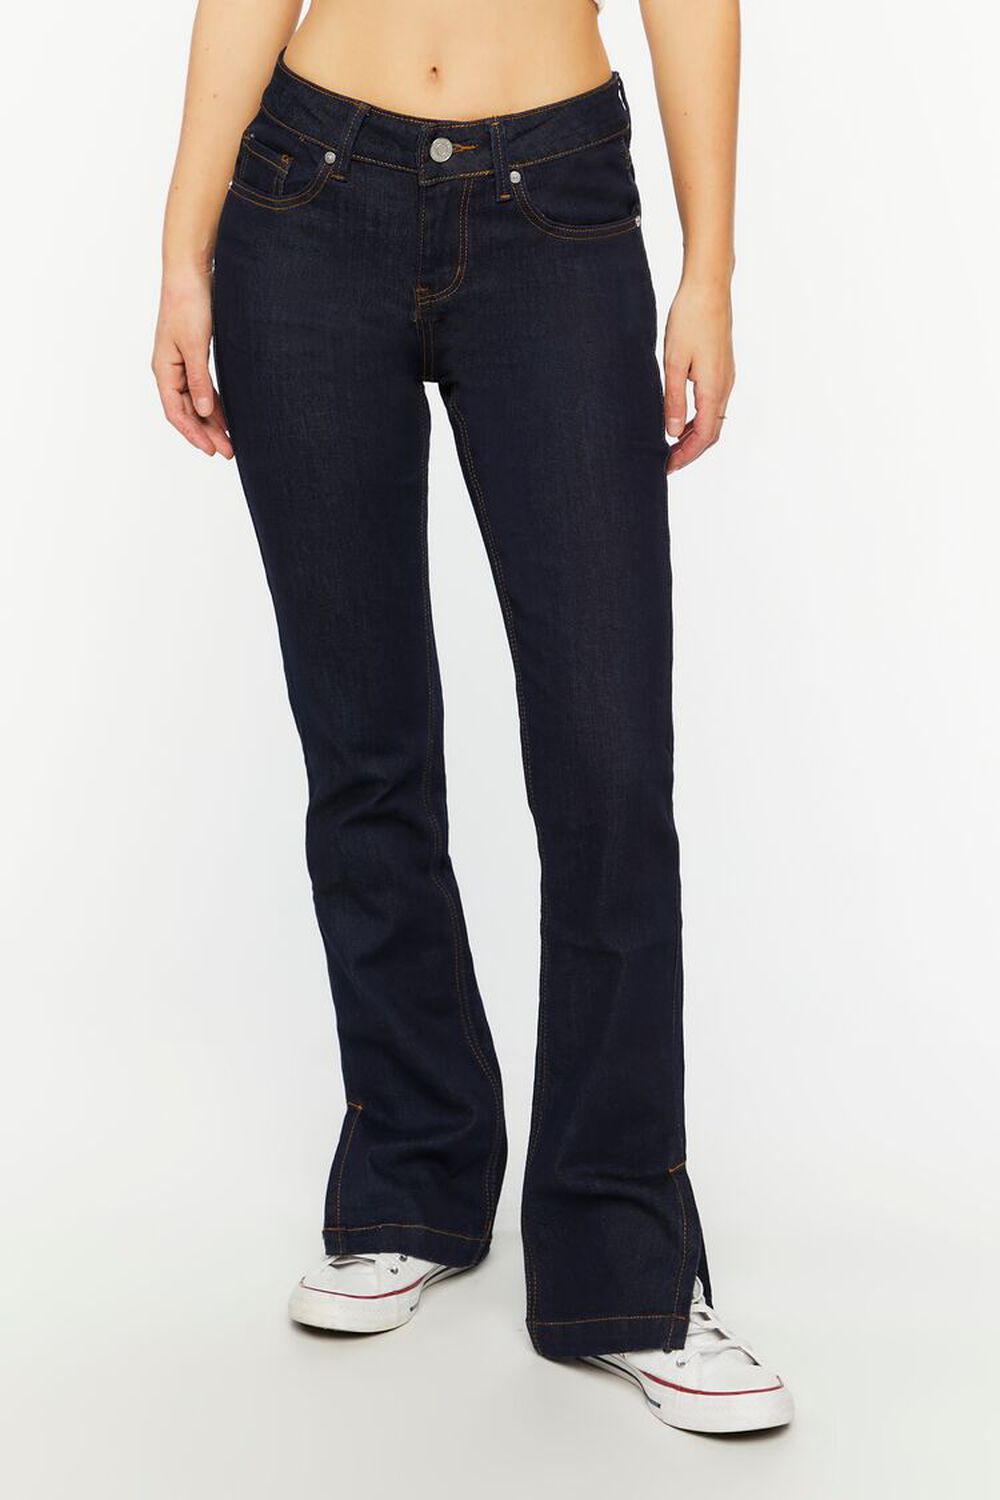 DARK DENIM Split-Hem Slim-Fit Jeans, image 1